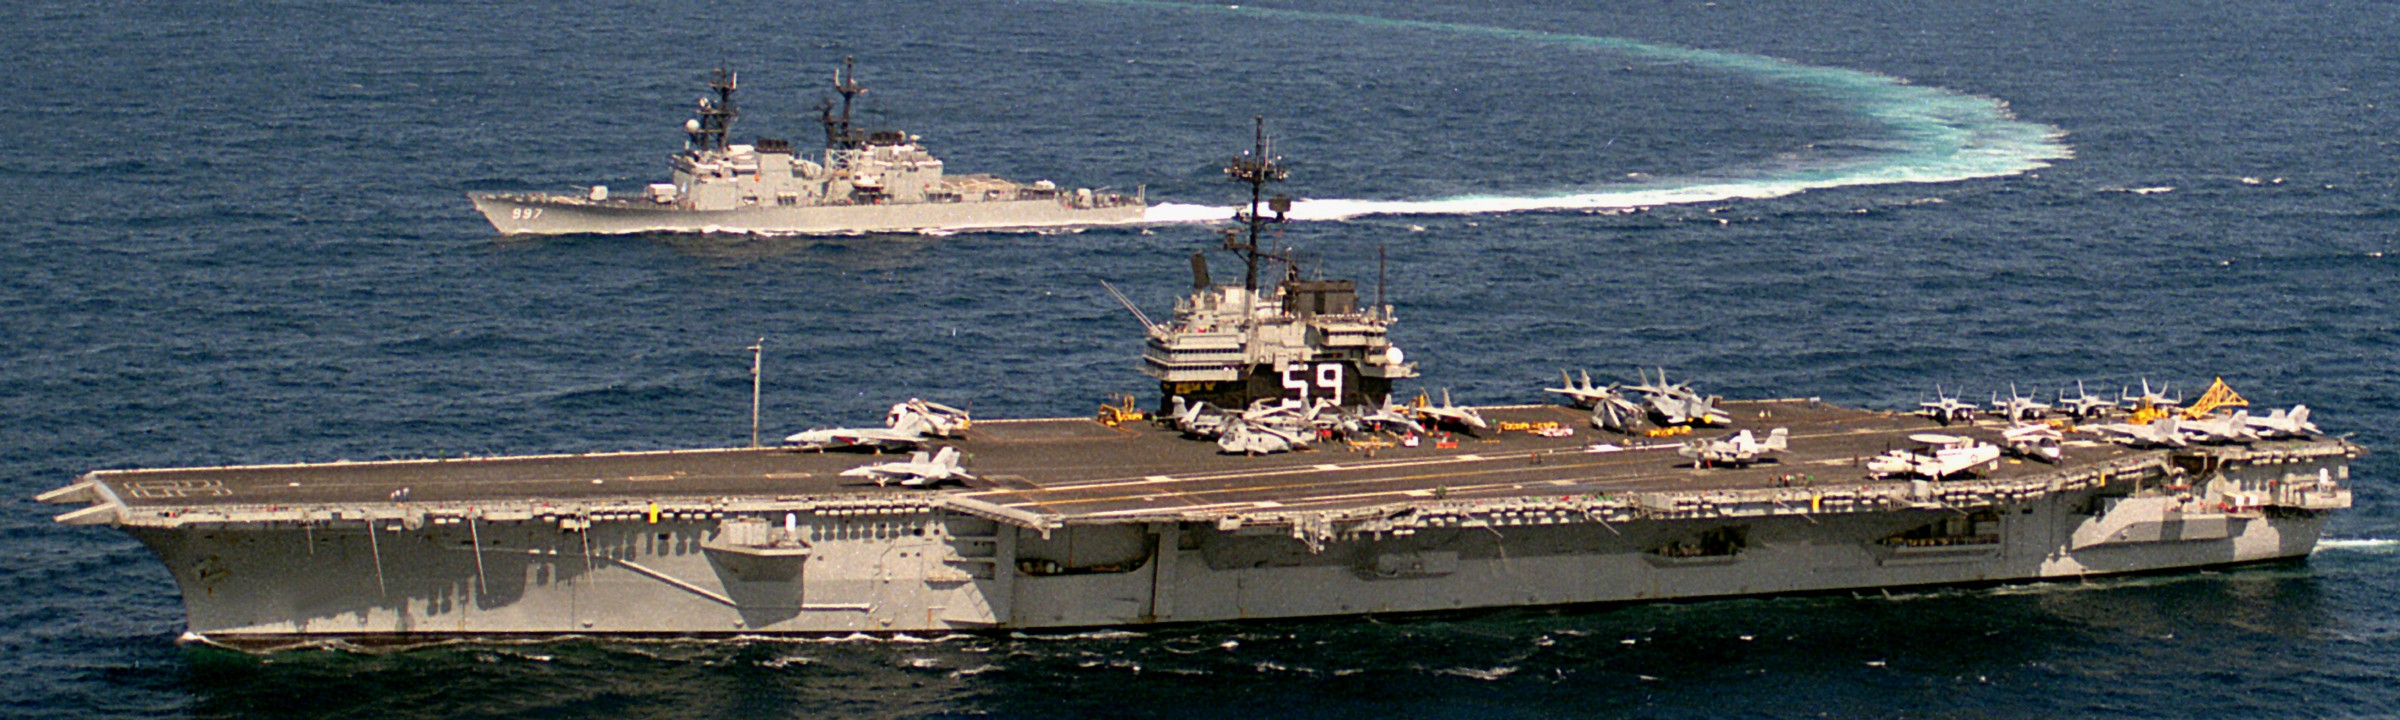 cv-59 uss forrestal aircraft carrier us navy fleet week new york 1989 102